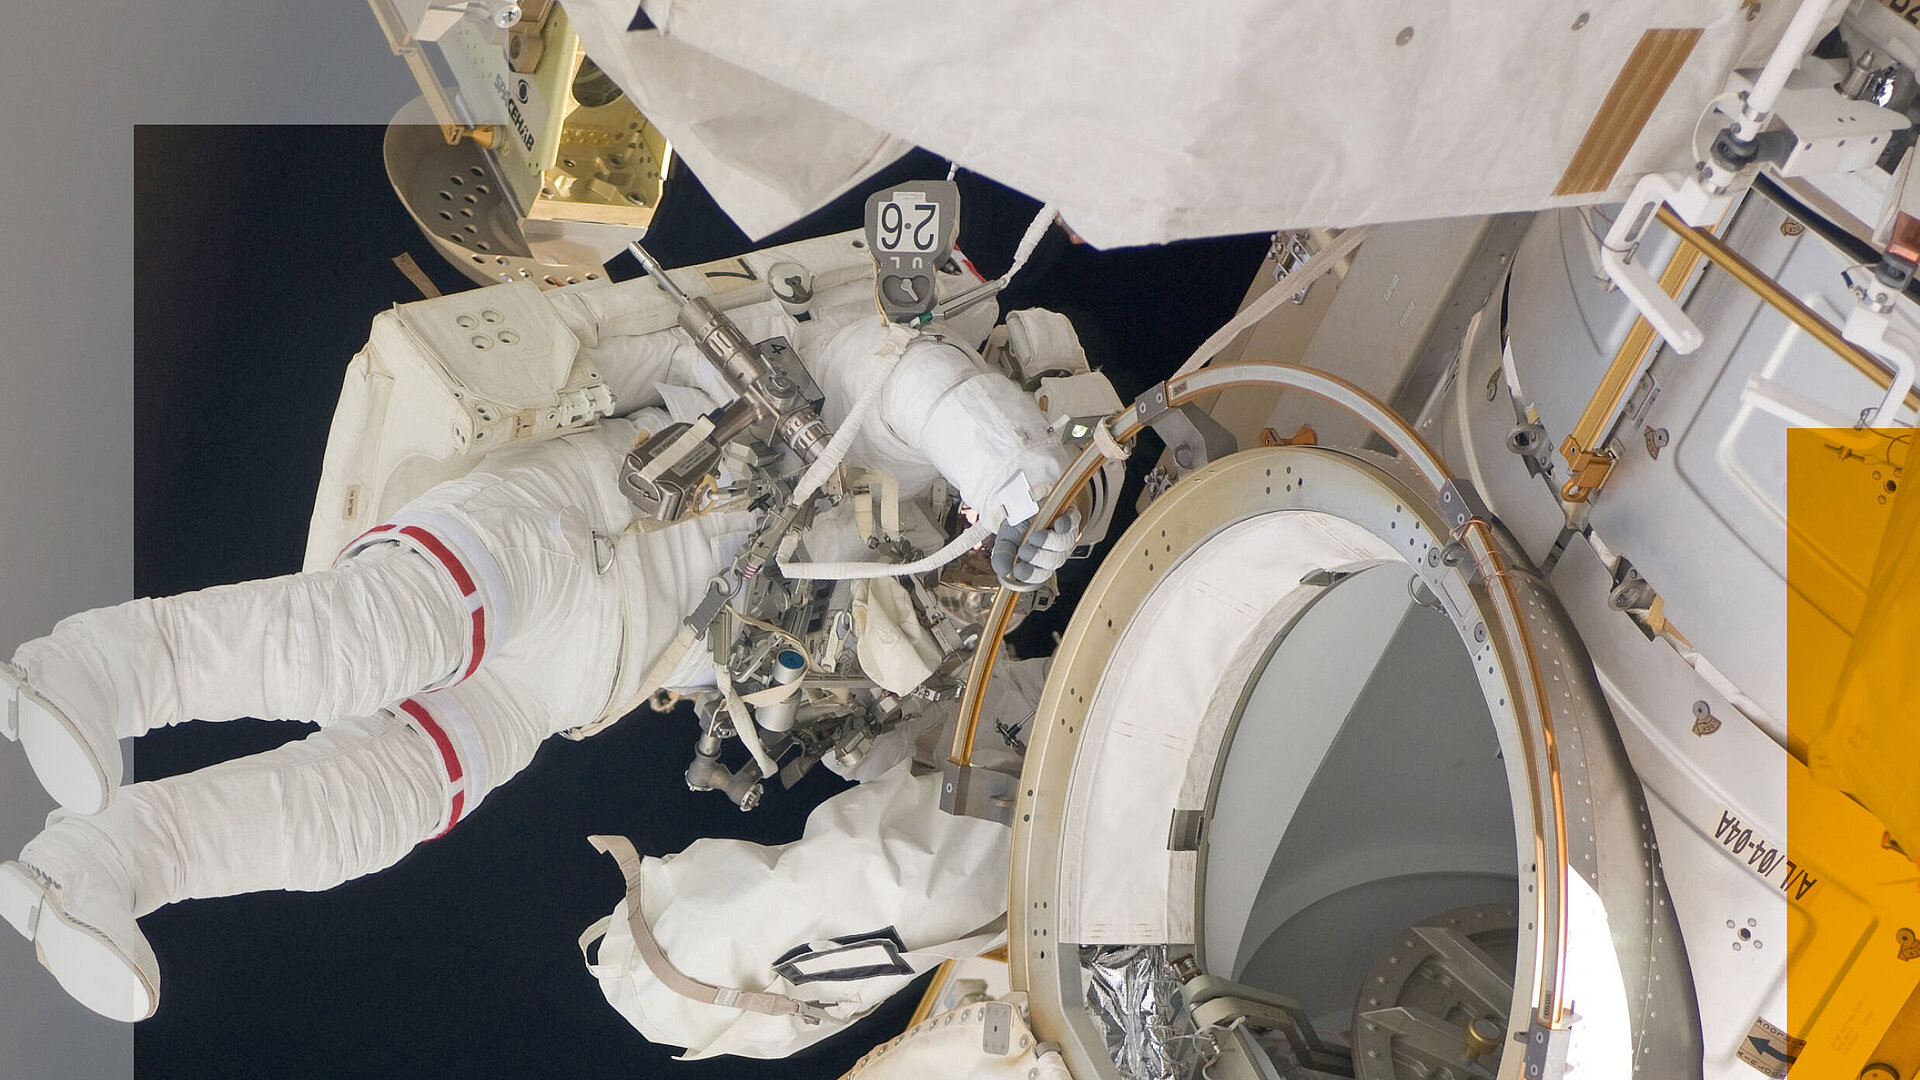 Flyer der Rosenheimer Tür-und Tortage 2018 mit dem Foto eines Astronauten